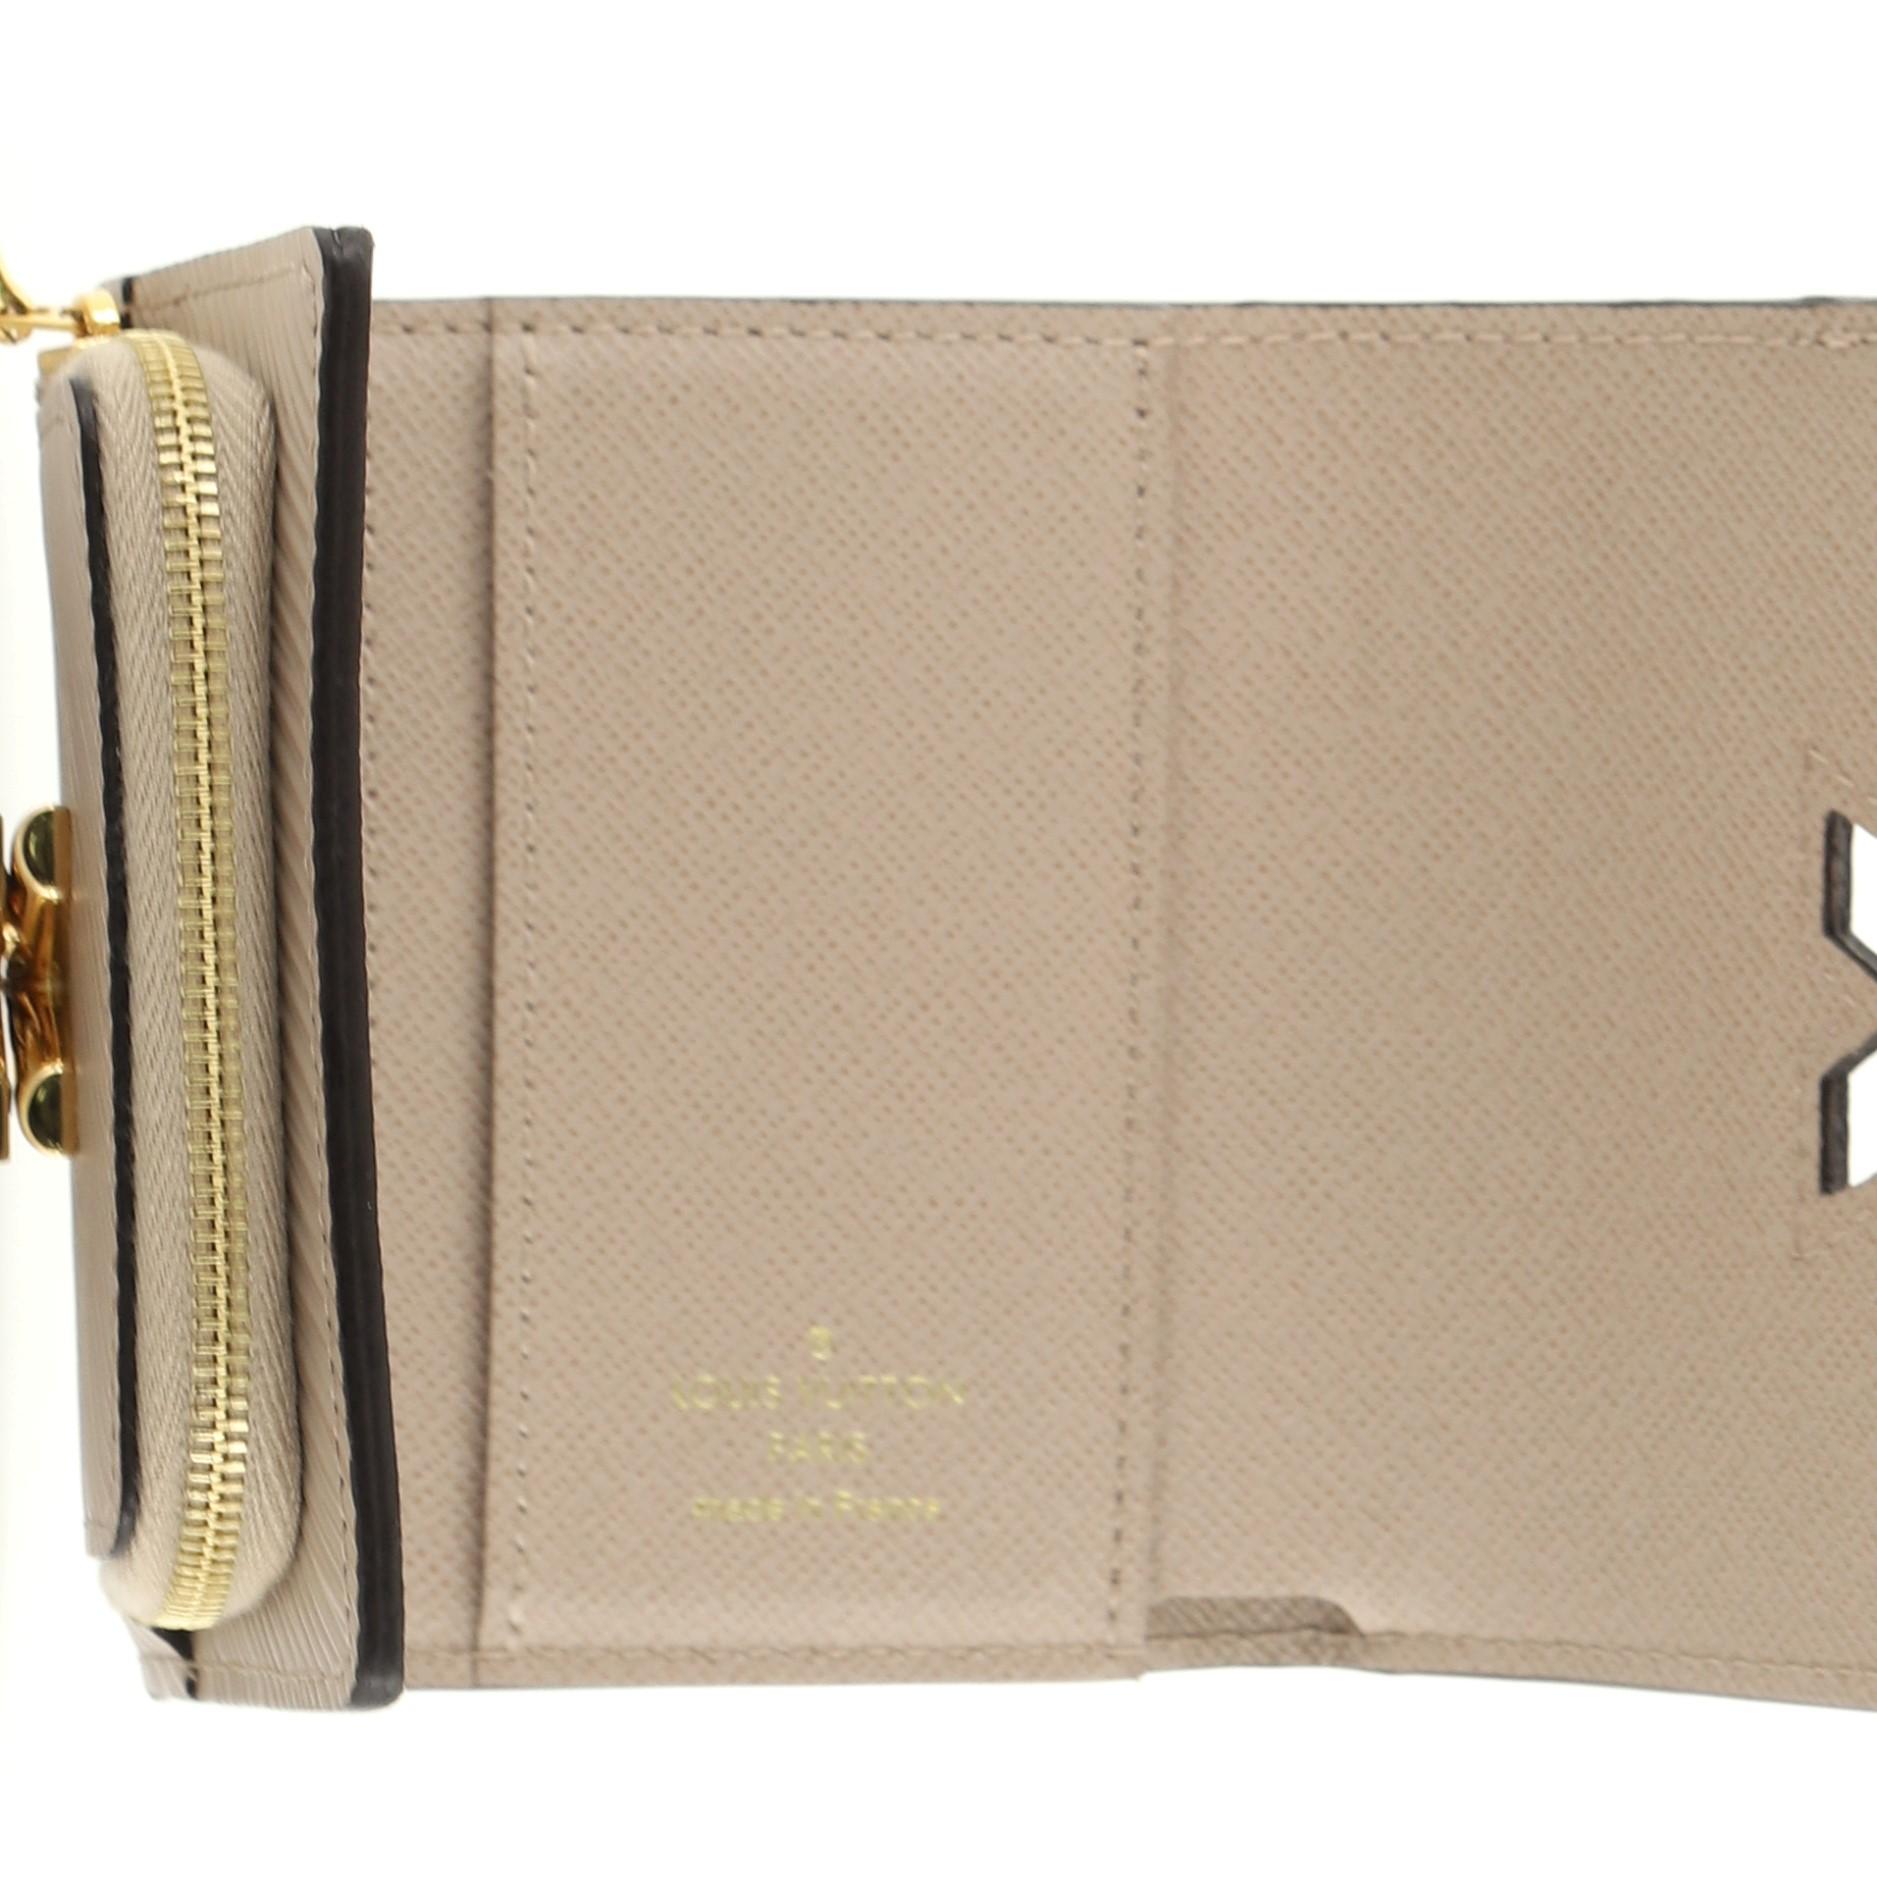 Beige Louis Vuitton Twist Wallet Epi Leather Compact